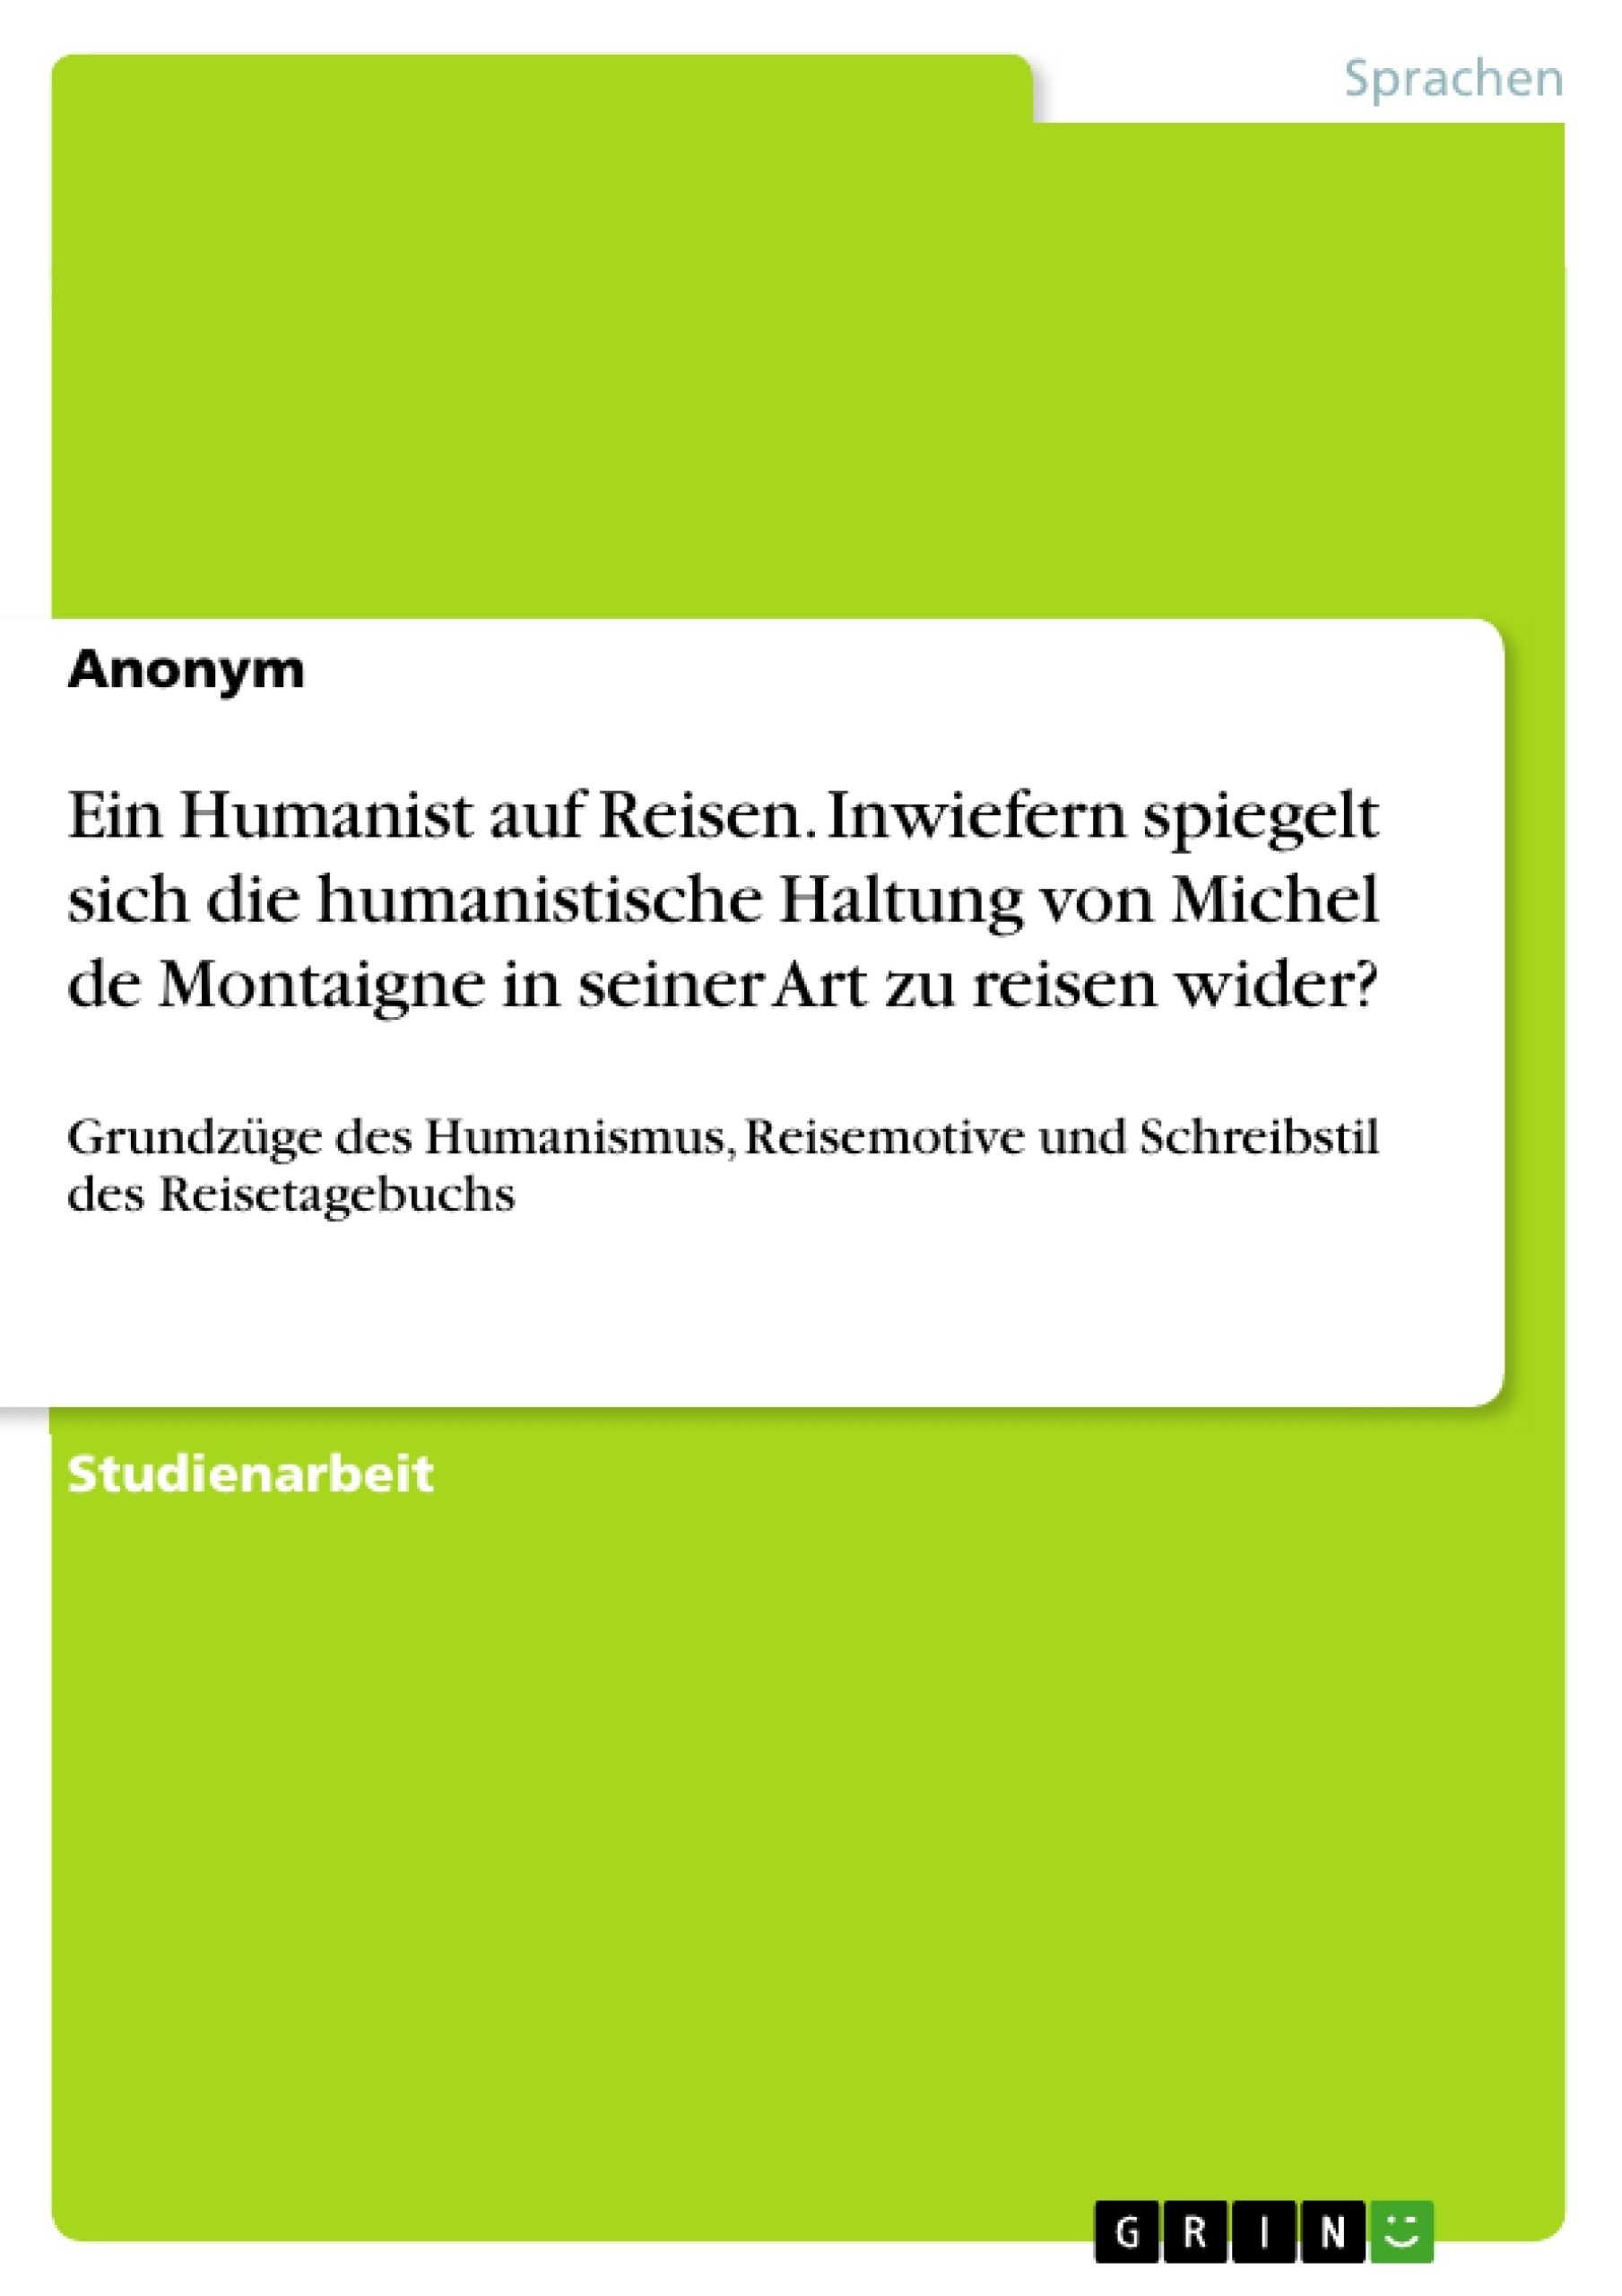 Title: Ein Humanist auf Reisen. Inwiefern spiegelt sich die humanistische Haltung von Michel de Montaigne in seiner Art zu reisen wider?